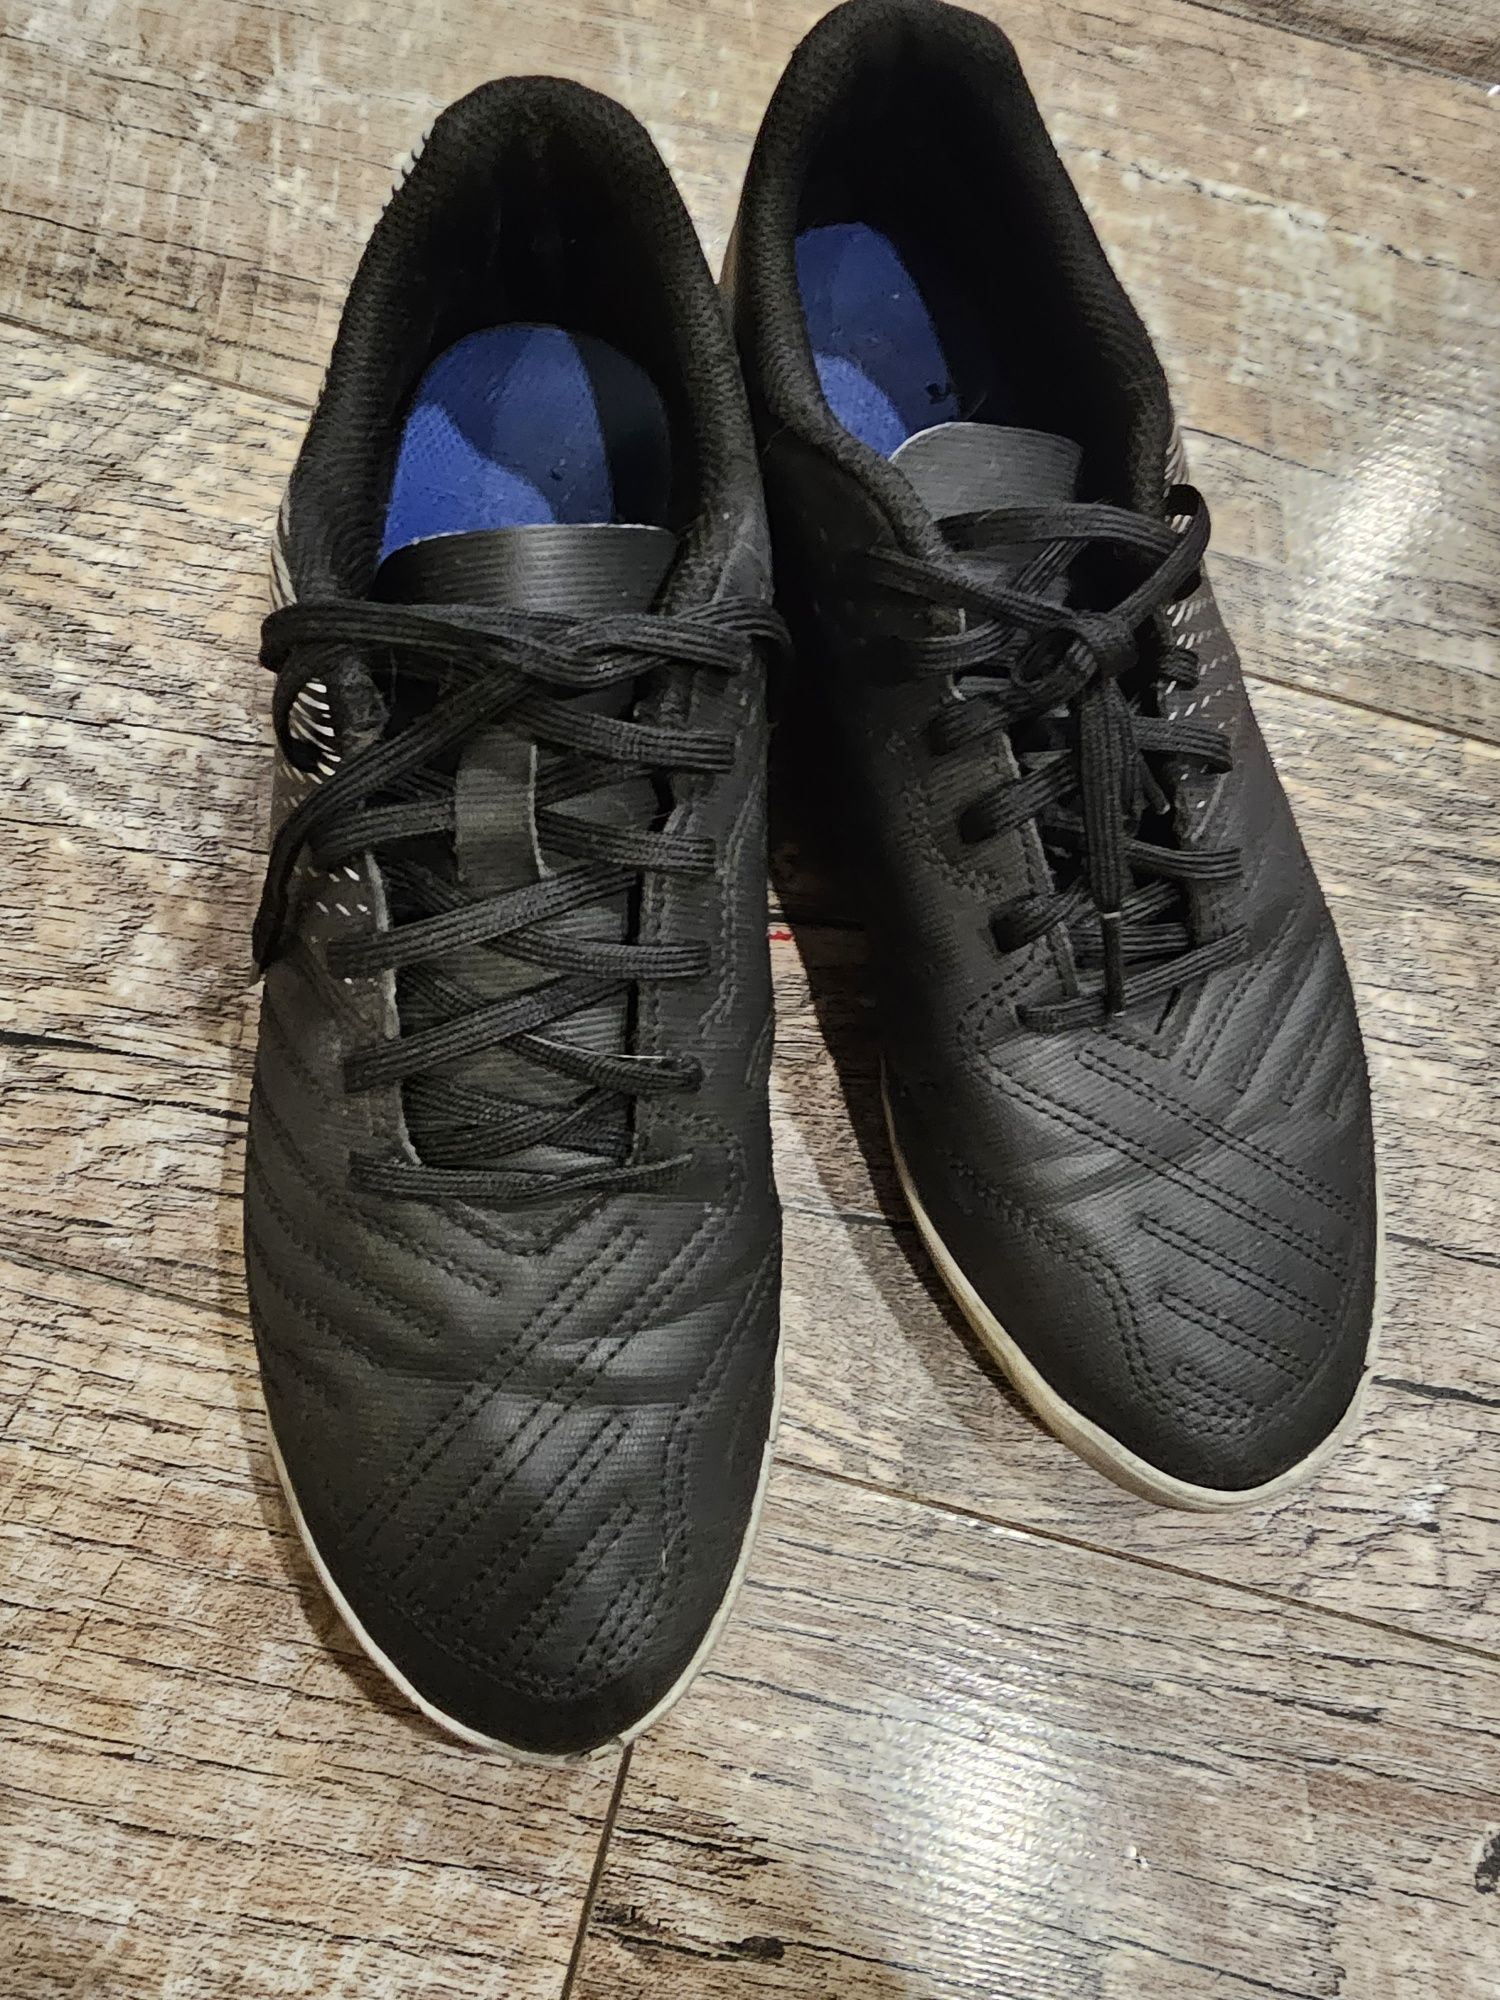 Turfy buty do piłki nożnej